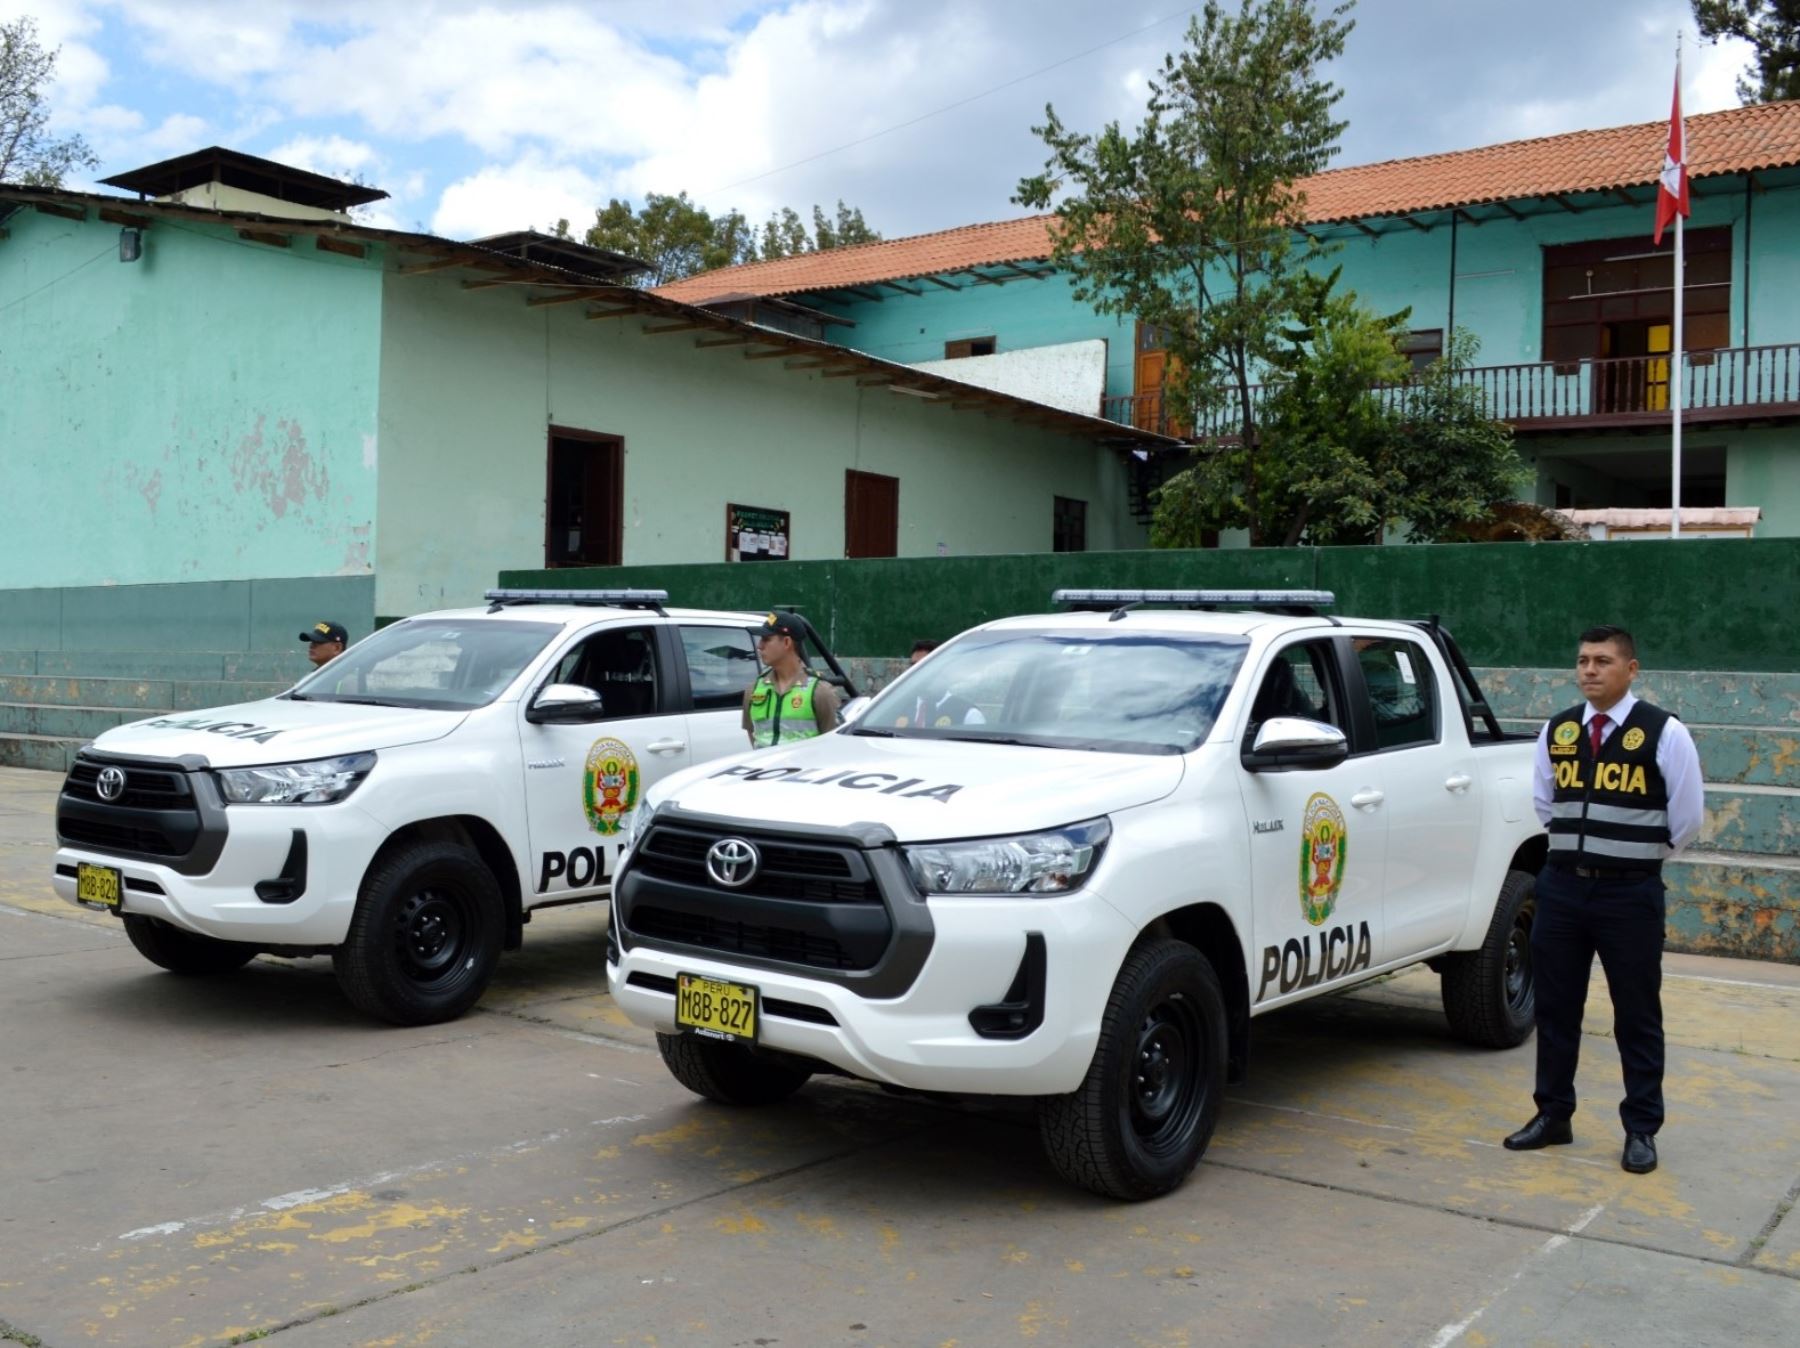 La empresa minera Pan American Silver donó dos patrulleros a la Policía Nacional para reforzar la seguridad ciudadana en la región Cajamarca. ANDINA/Difusión